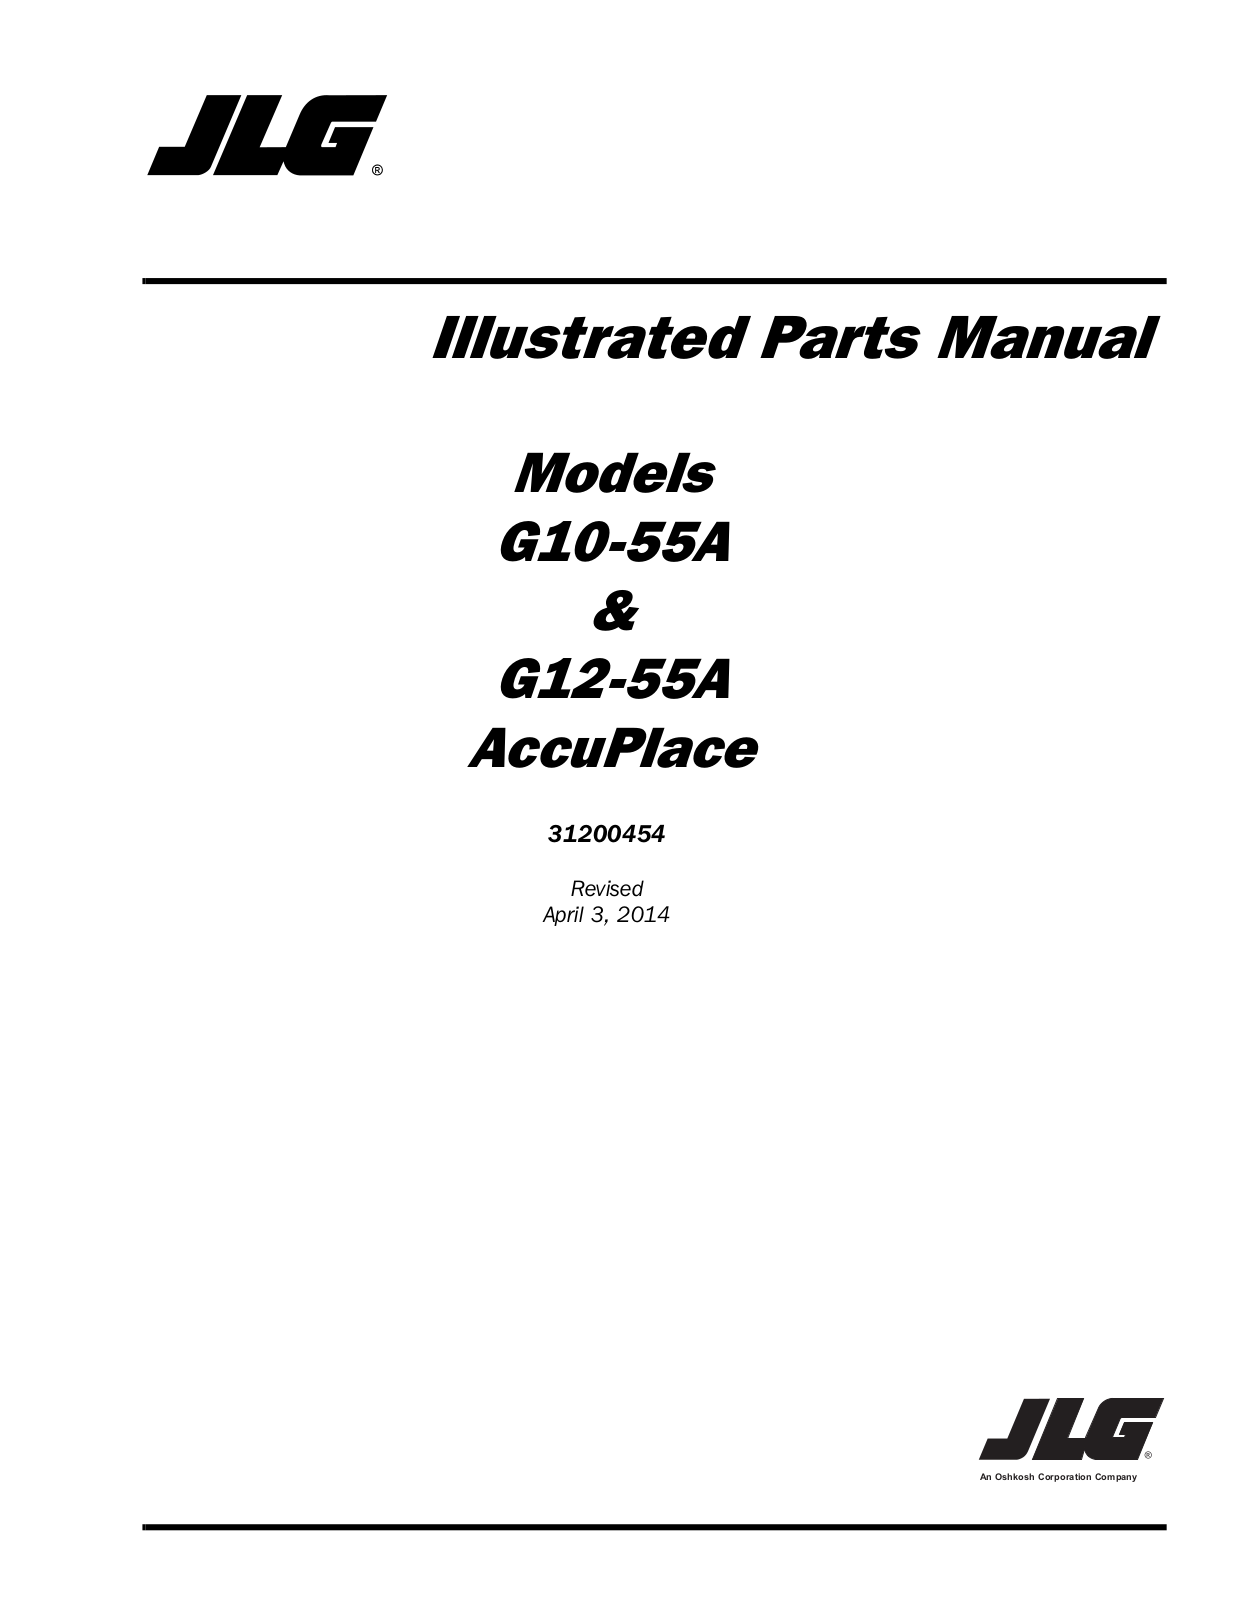 JLG G12-55A Parts Manual